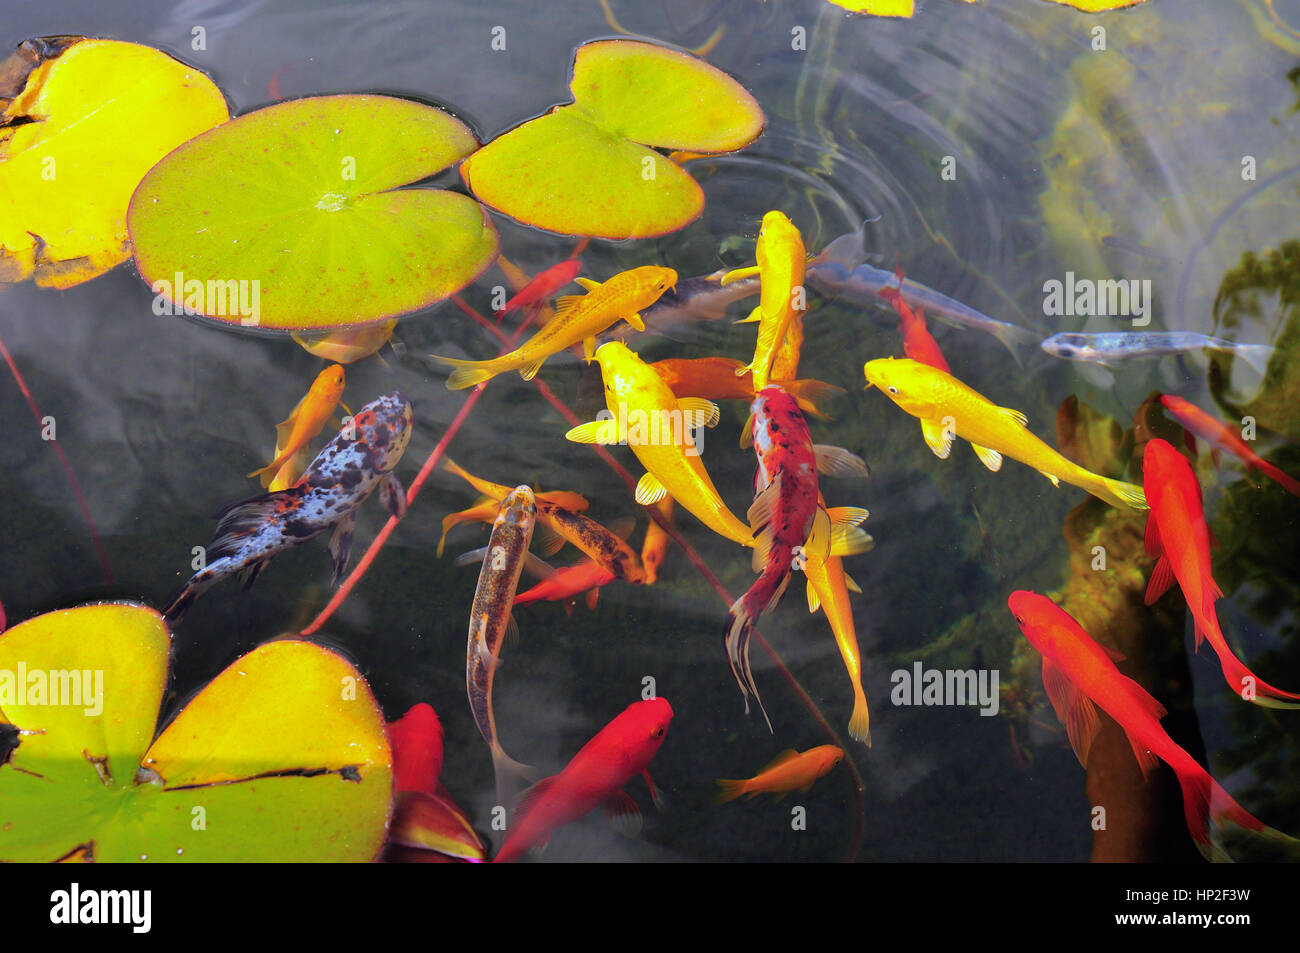 Bunte exotische Fische in einem Teich Garten Zierfische Stockfoto